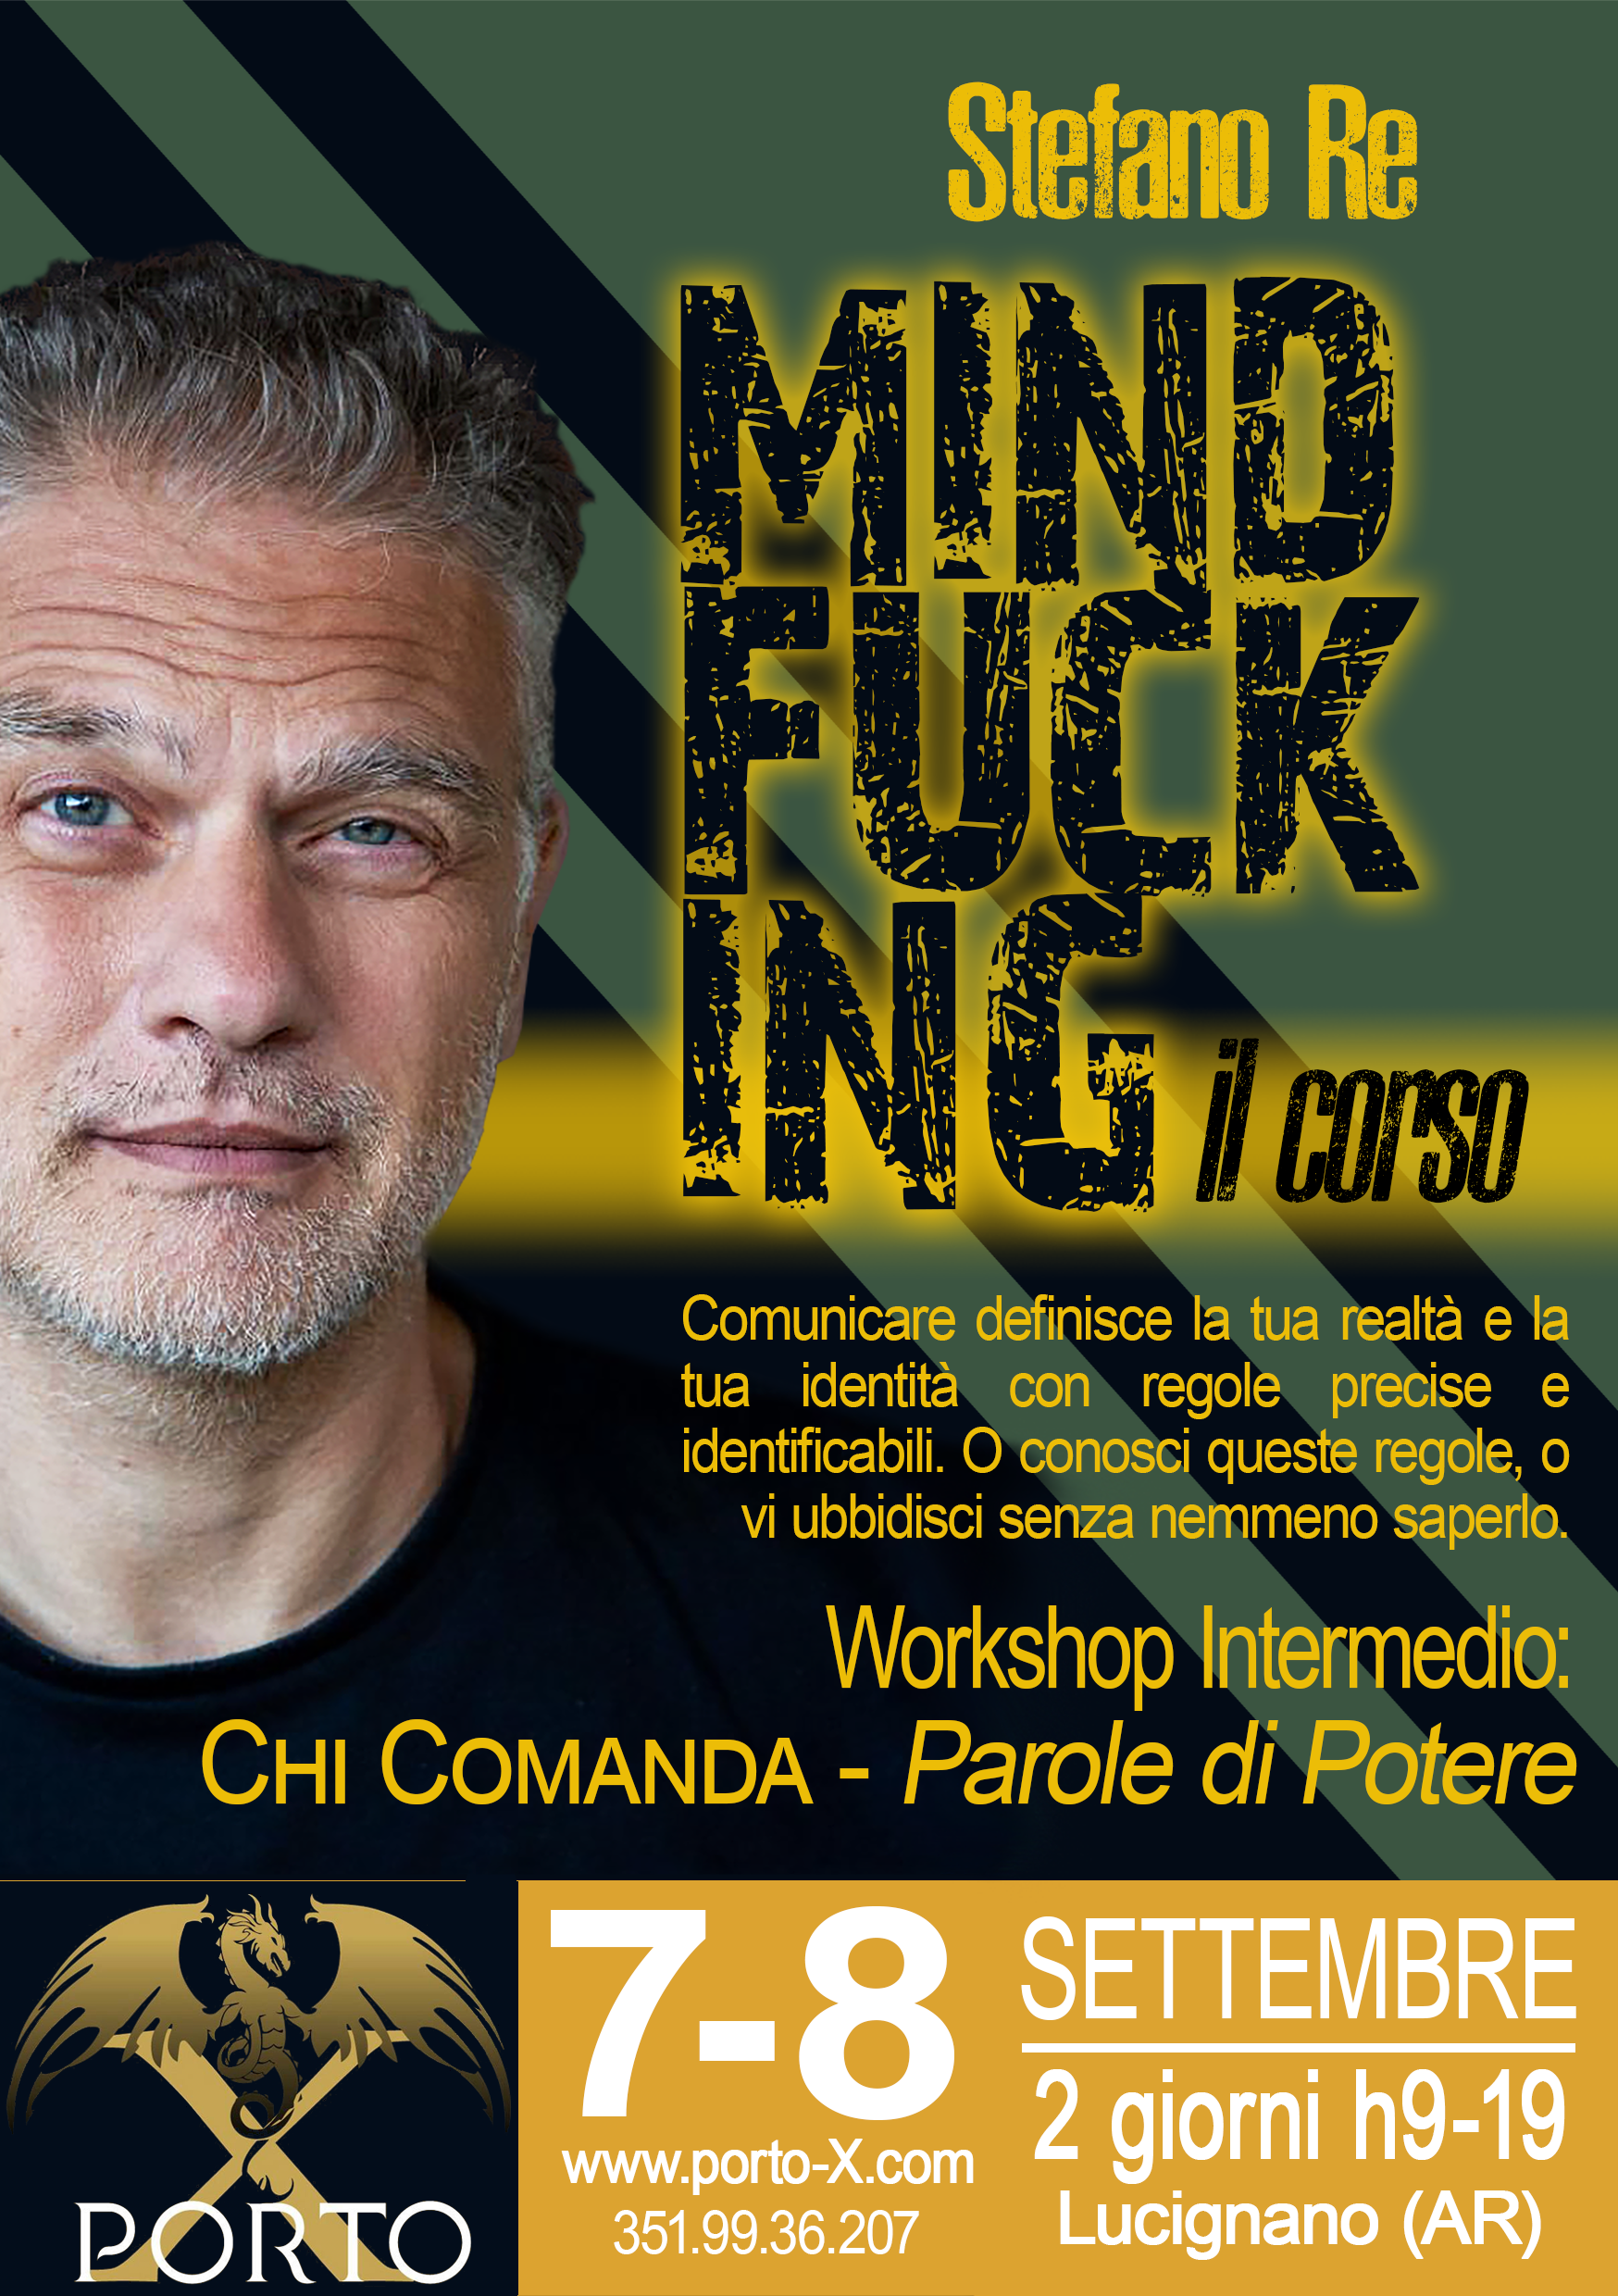 Stefano Re Mindfucking Corso Intermedio